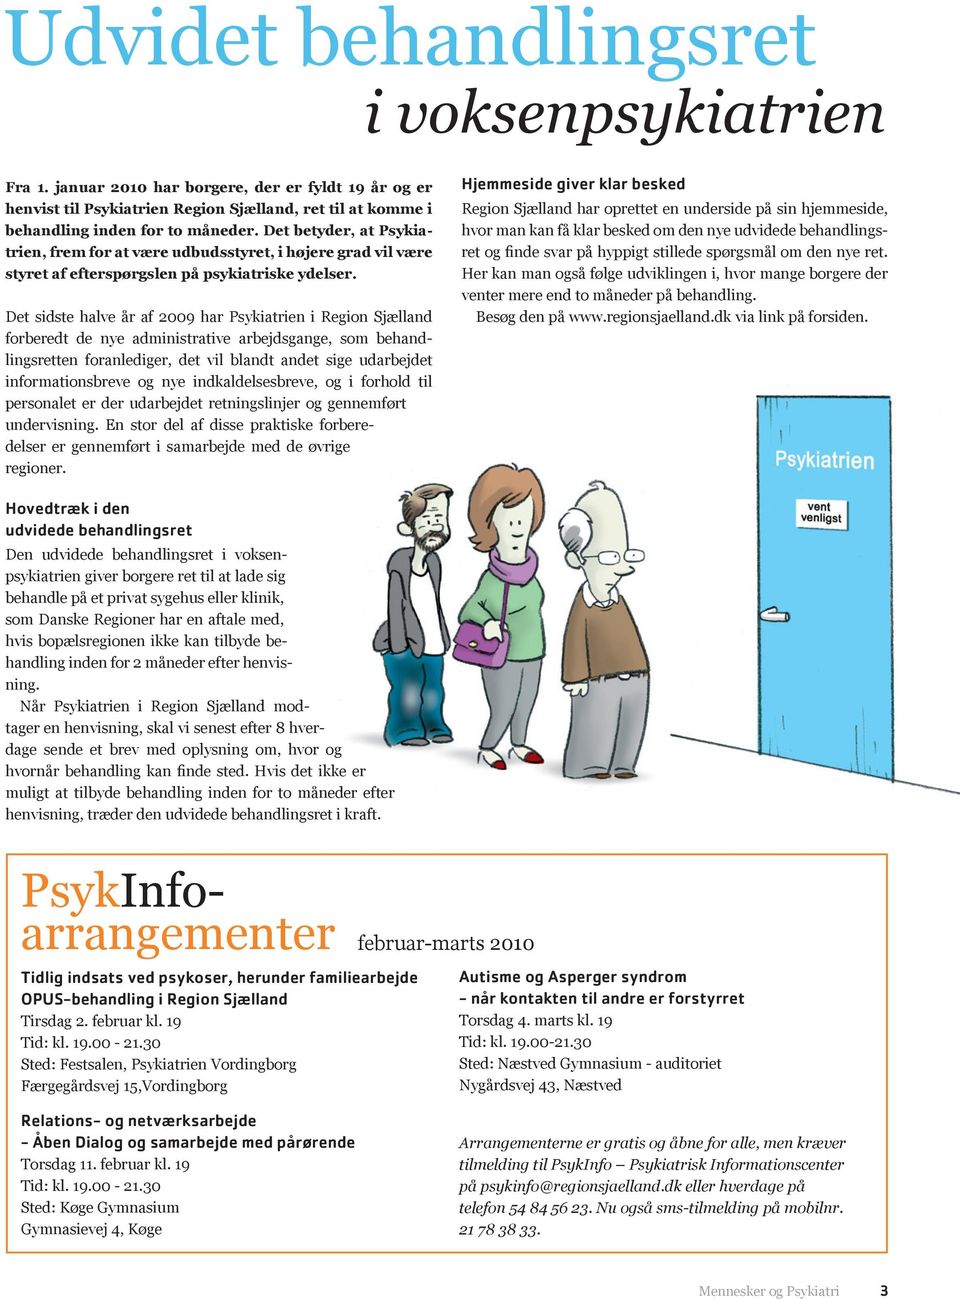 Det sidste halve år af 2009 har Psykiatrien i Region Sjælland forberedt de nye administrative arbejdsgange, som behandlingsretten foranlediger, det vil blandt andet sige udarbejdet informationsbreve